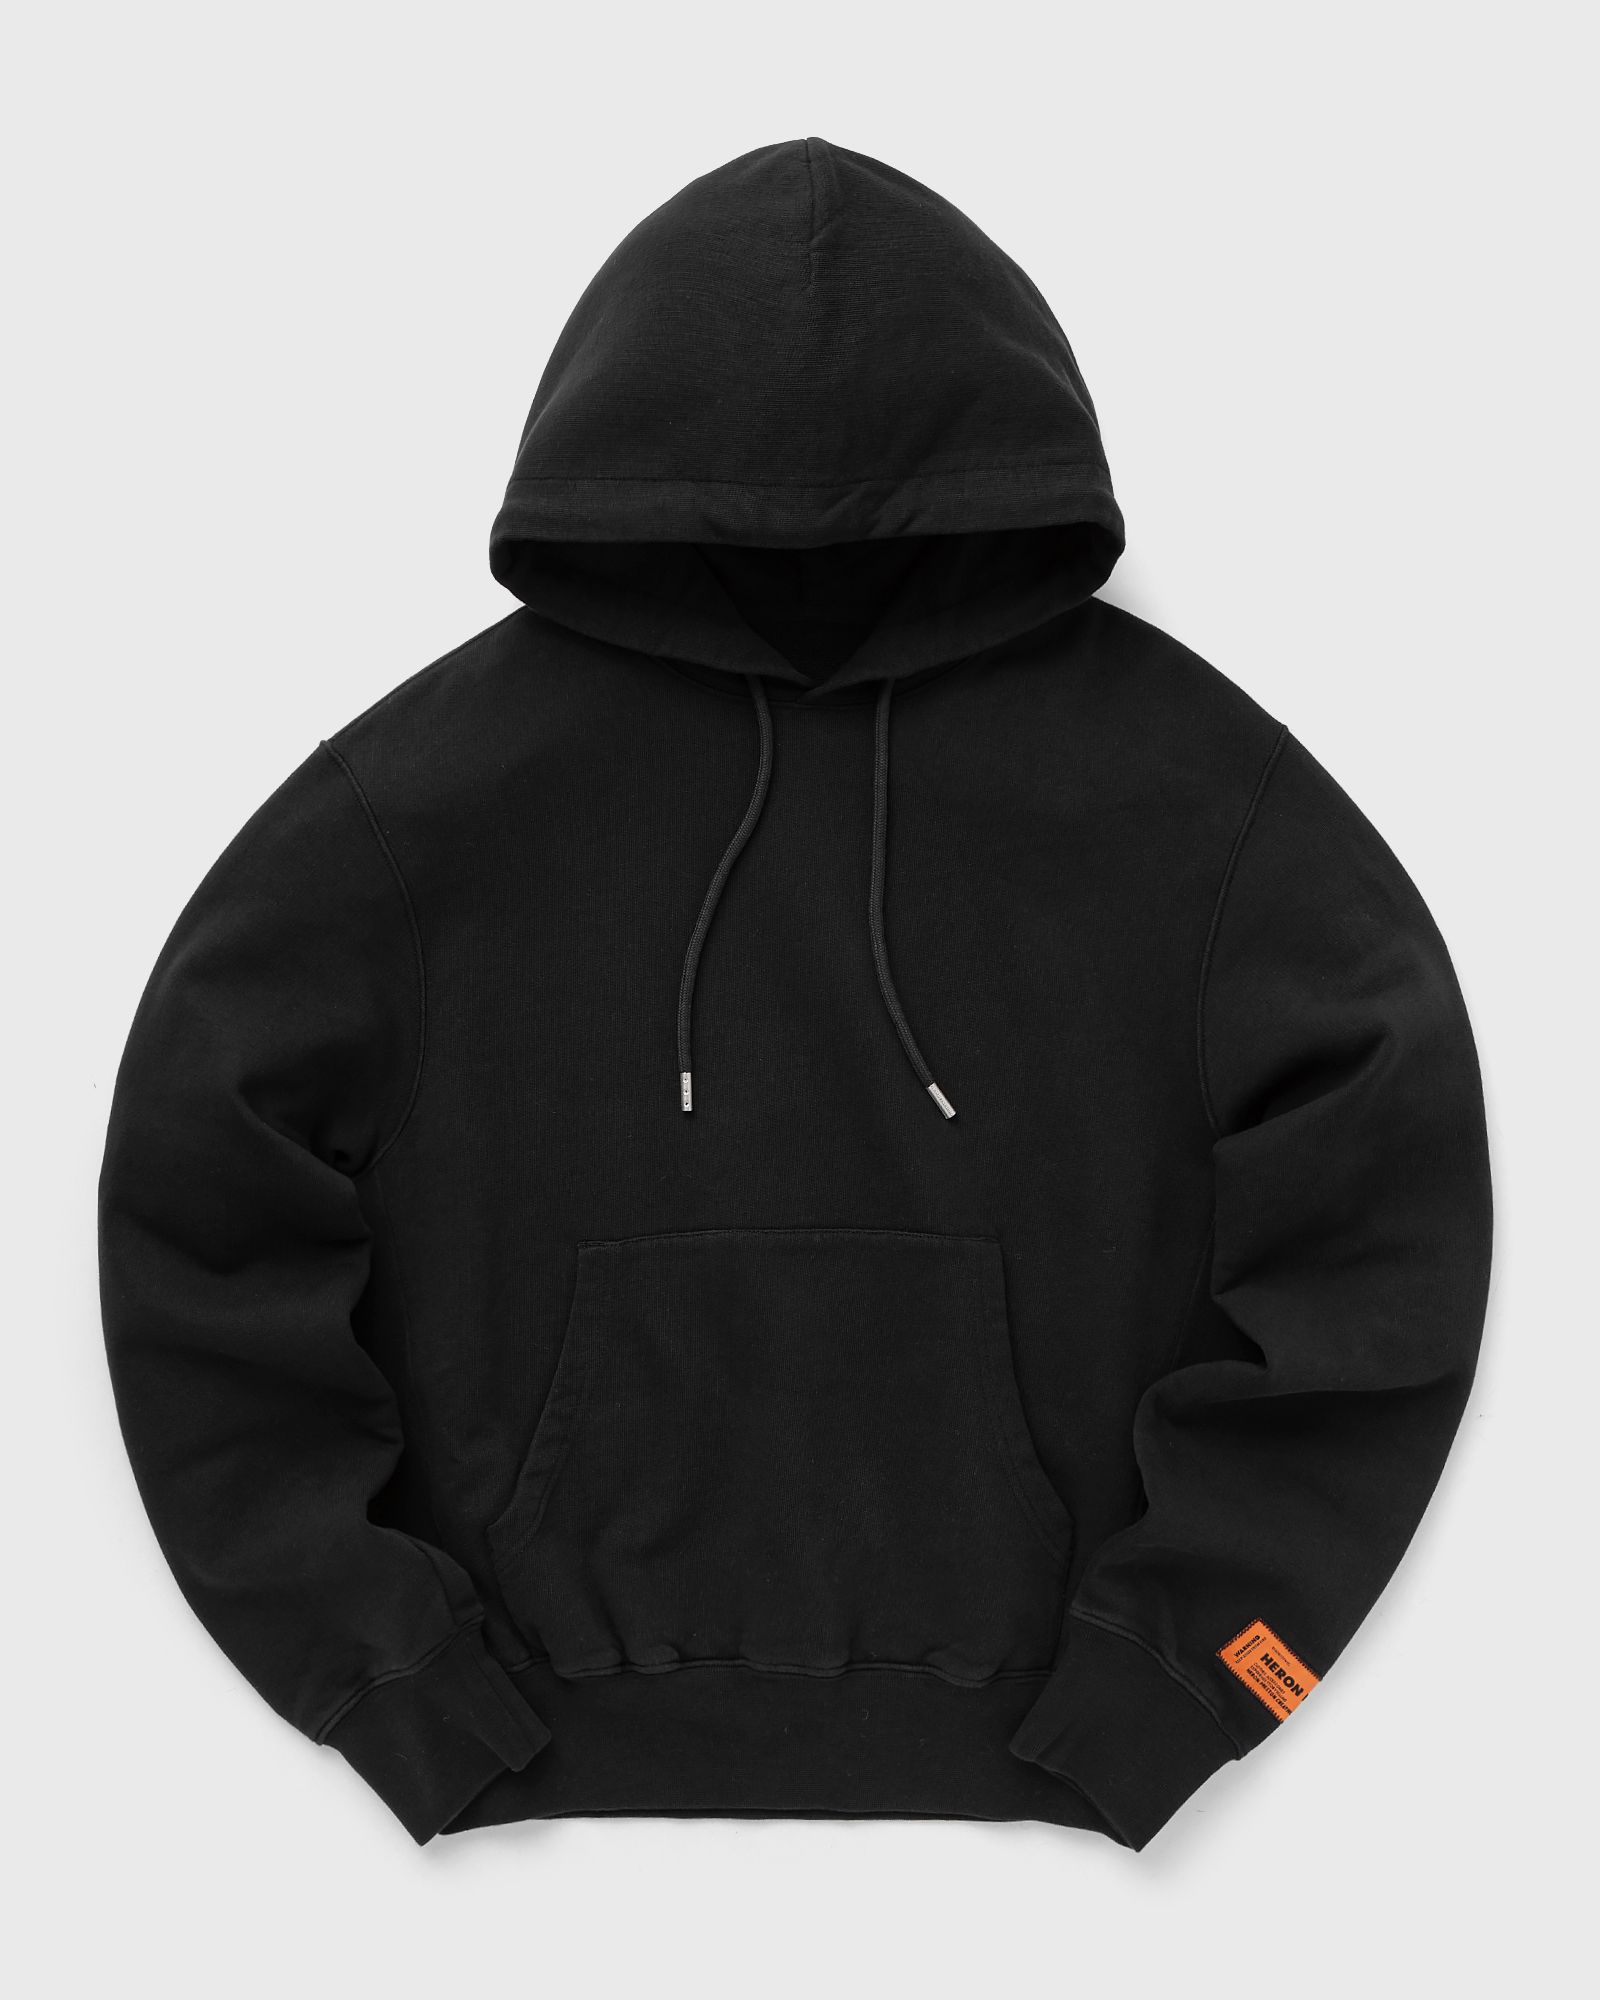 Heron Preston - nf ex-ray recycled co hoodie women hoodies black in größe:l